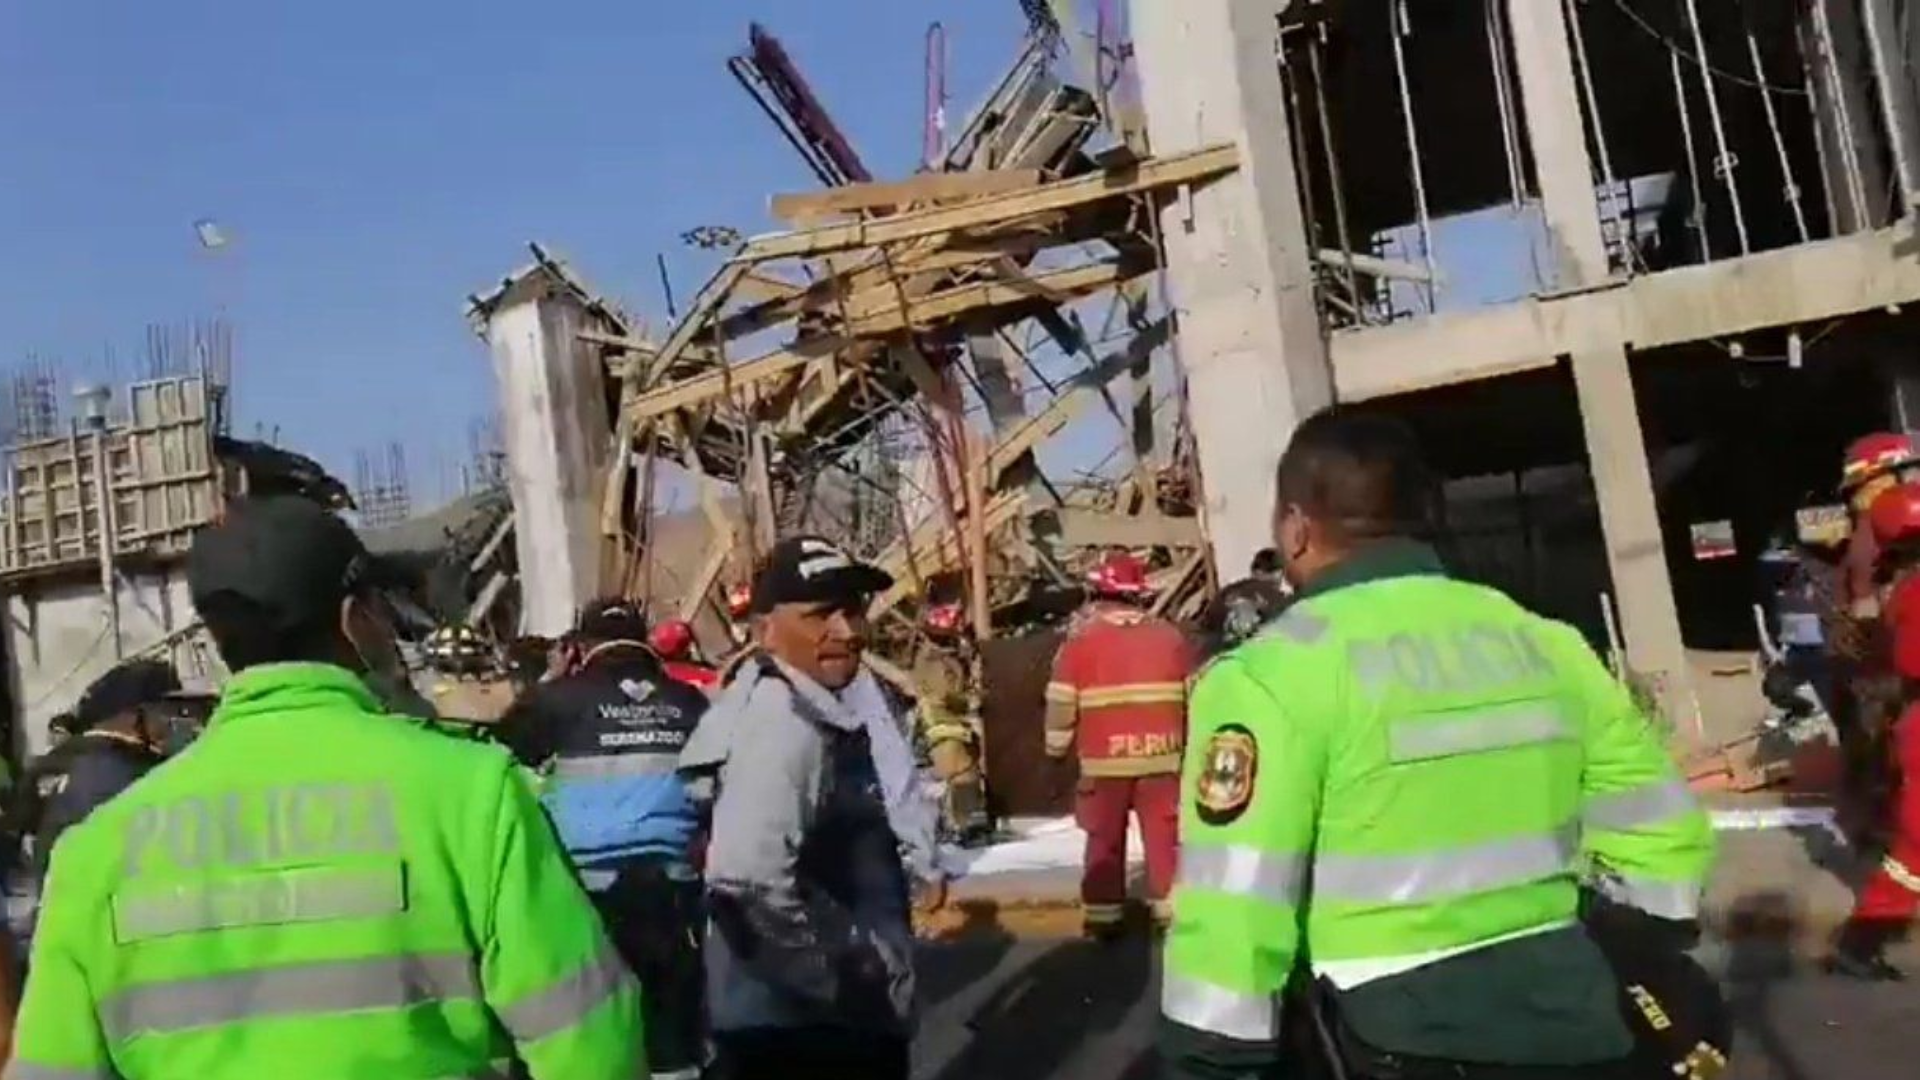 Fotos y videos del derrumbe en Ventanilla que dejó seis trabajadores heridos